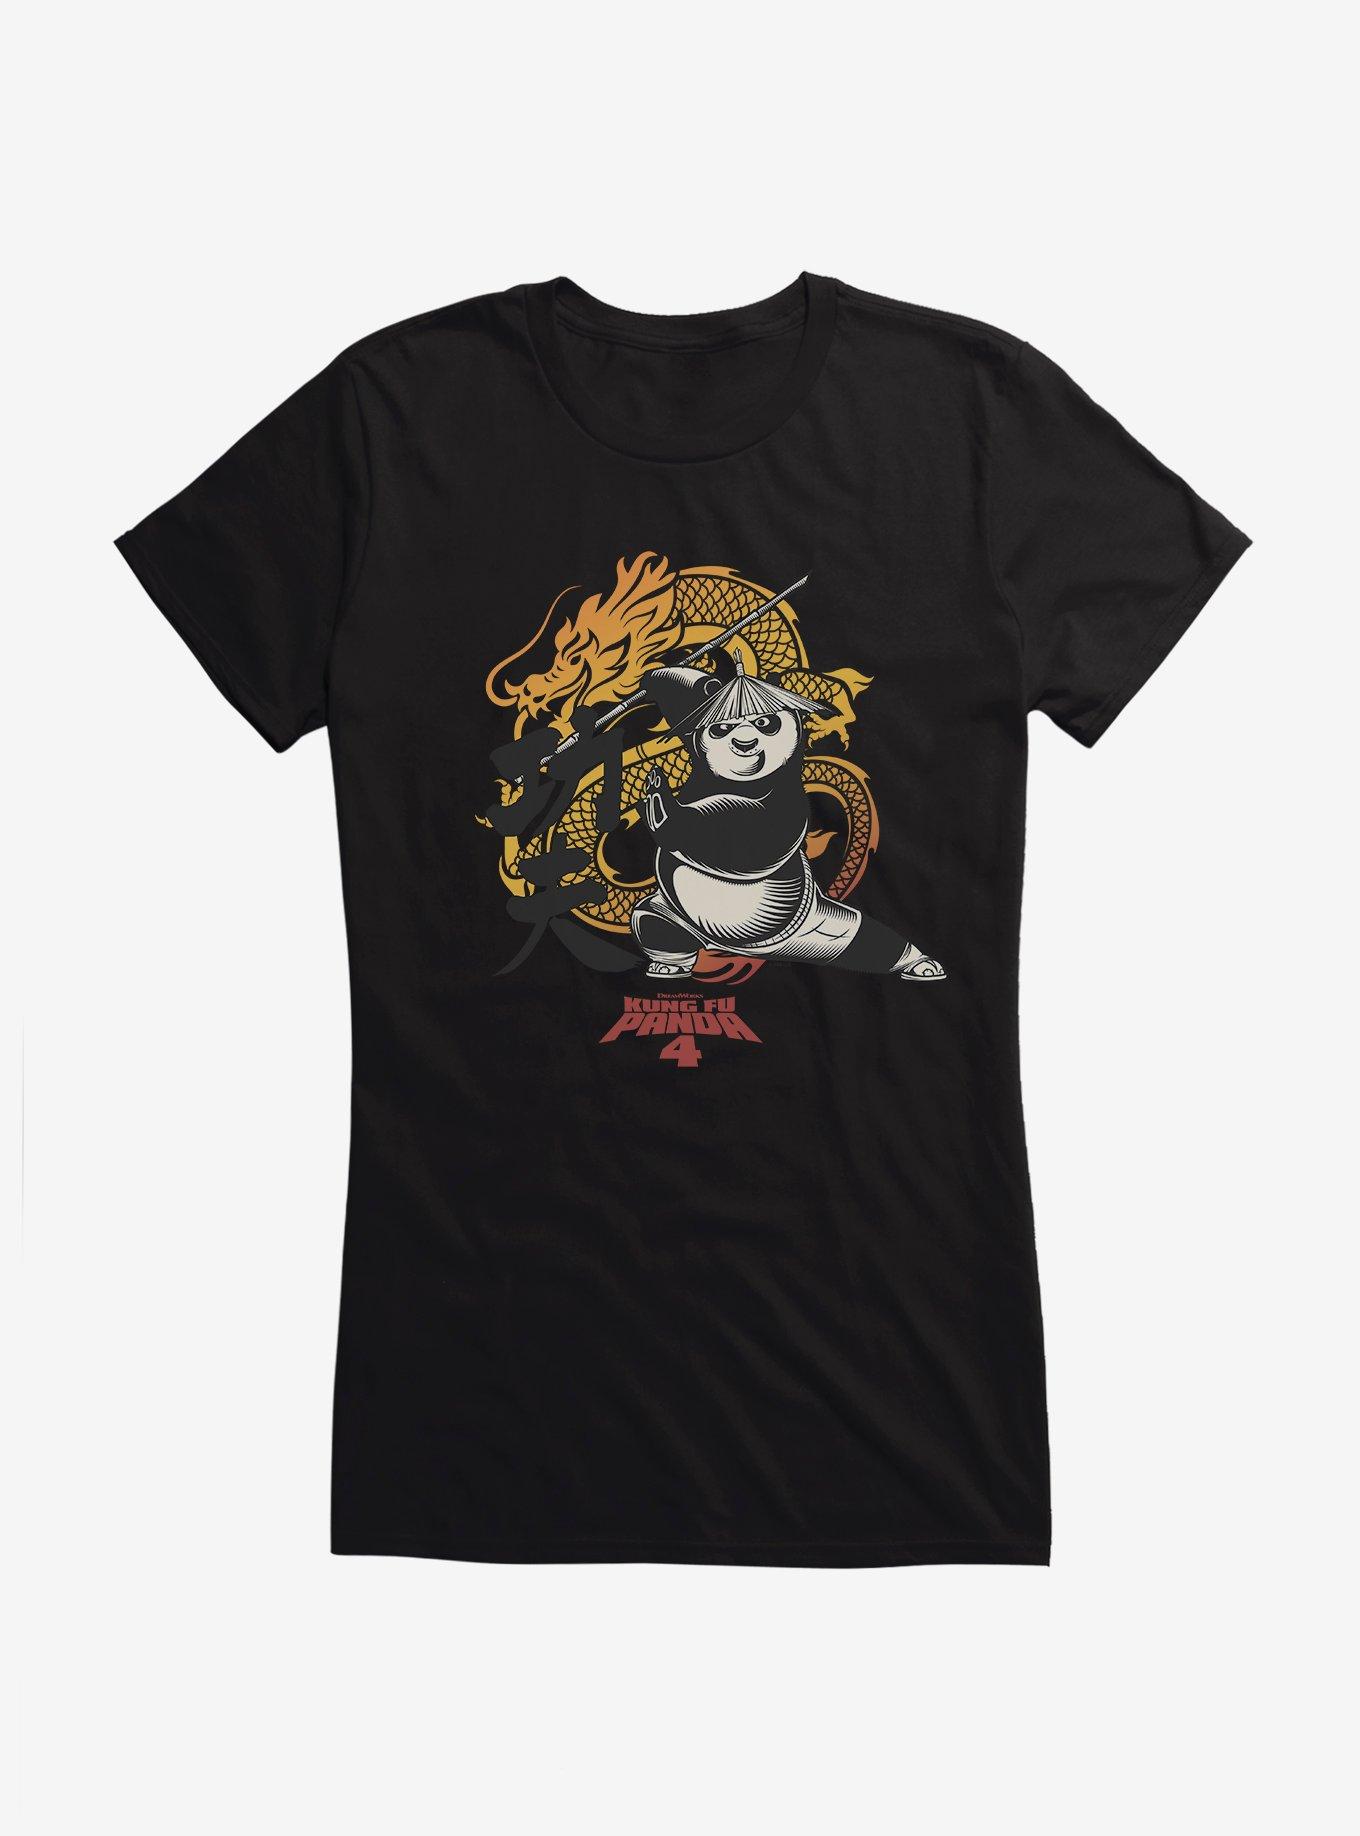 Kung Fu Panda 4 The Dragon Warrior Girls T-Shirt